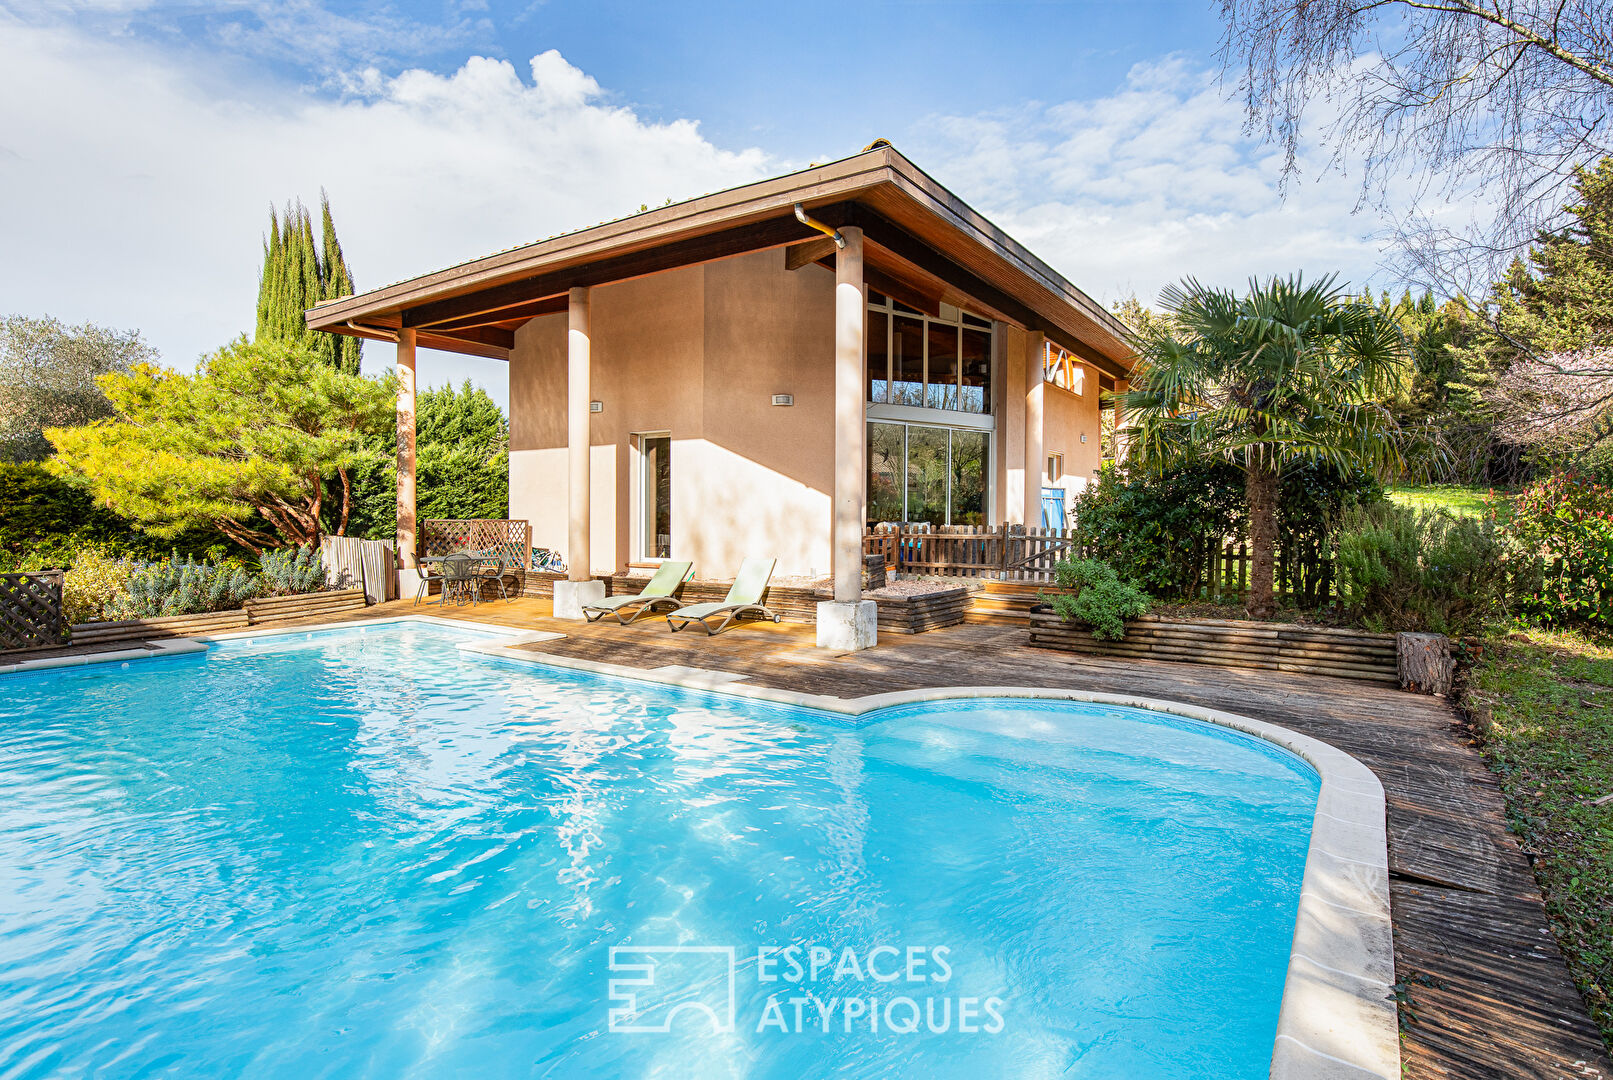 Maison familiale avec piscine à Lévignac